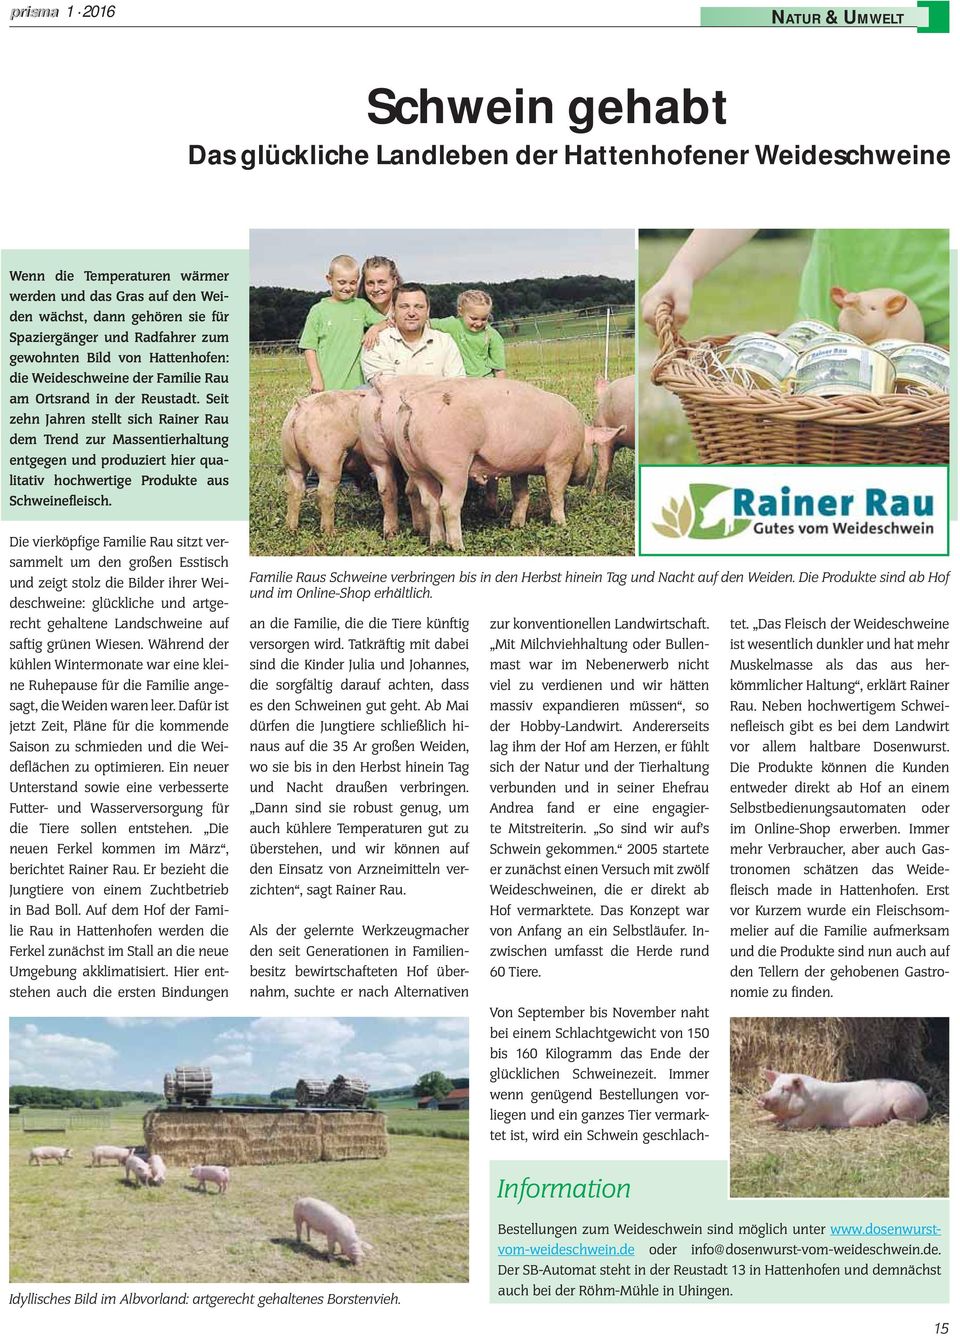 Seit zehn Jahren stellt sich Rainer Rau dem Trend zur Massentierhaltung entgegen und produziert hier qualitativ hochwertige Produkte aus Schweinefleisch.